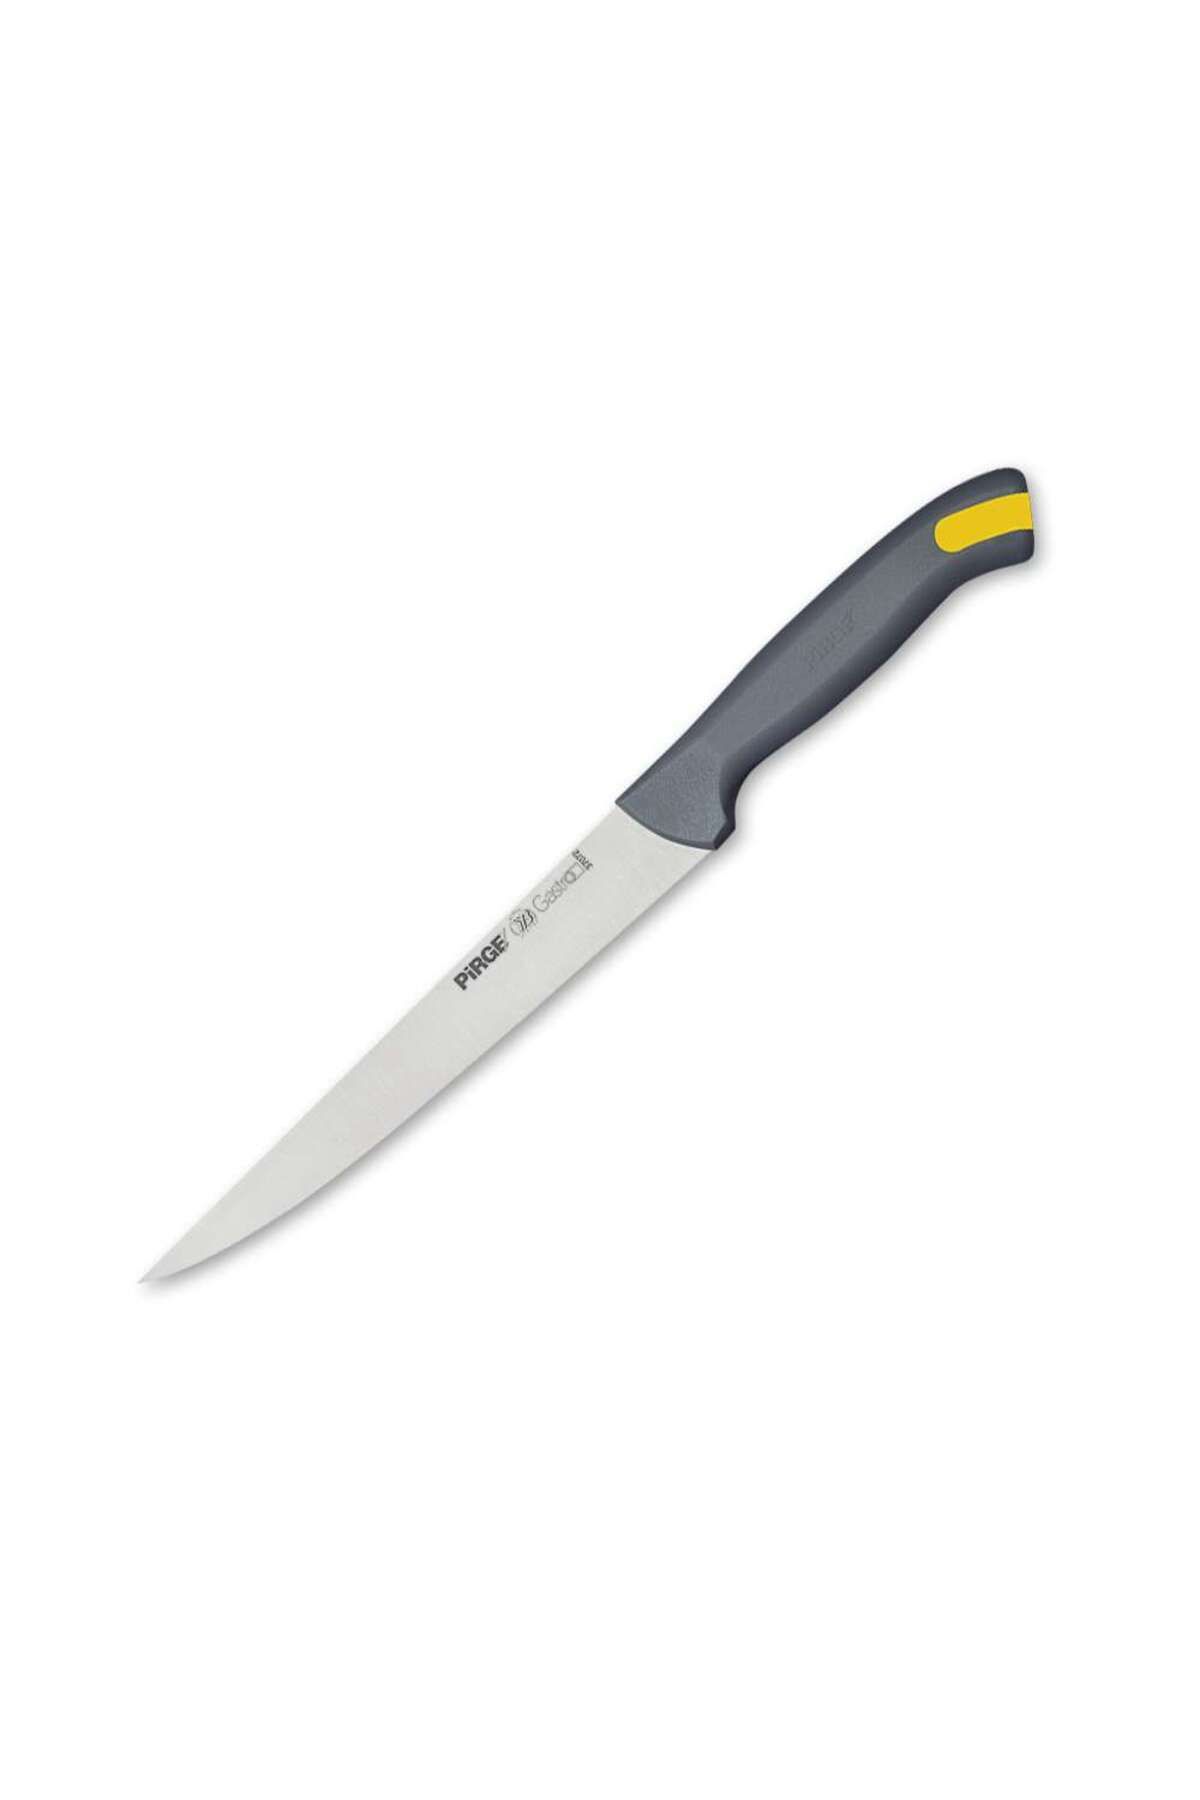 Pirge Pirge Gastro Peynir Bıçağı 17,5 cm GRİ